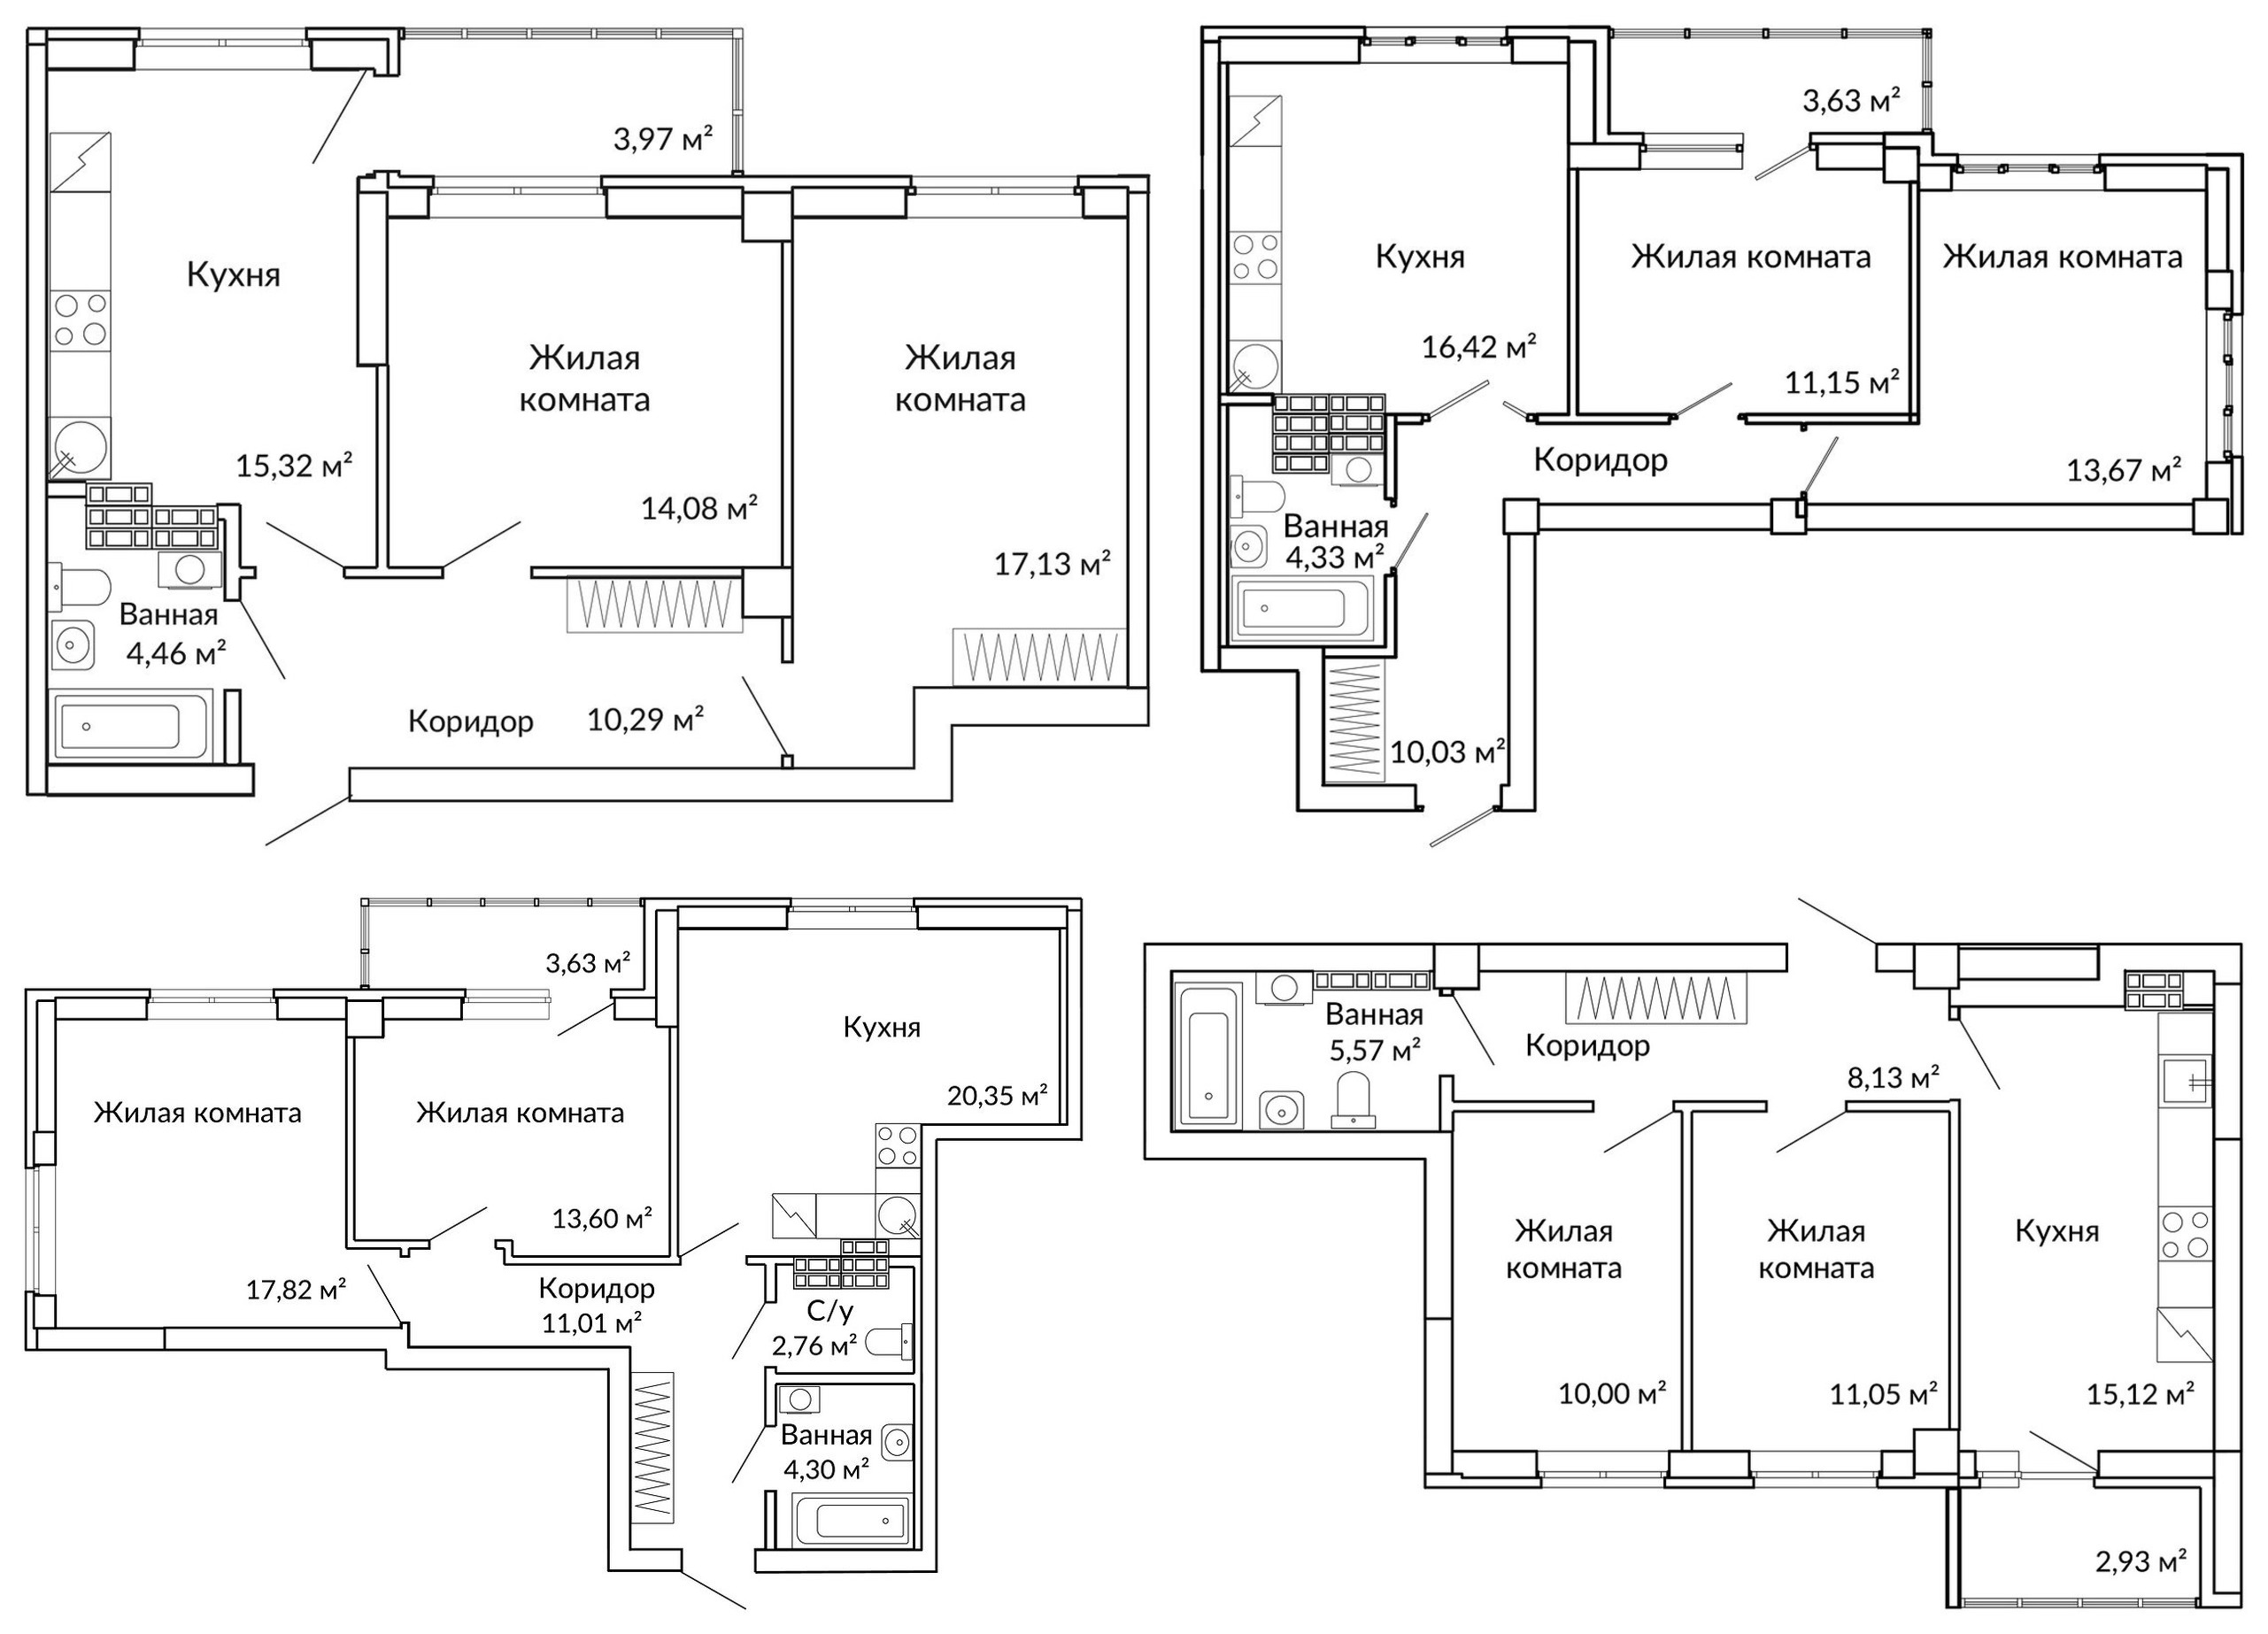 В квартирах сапфирового дома метраж кухни-гостиной — от 15,1 до 20,4 кв. м, она может быть почти квадратной, иметь ниши под кухонный остров или гостевую зону